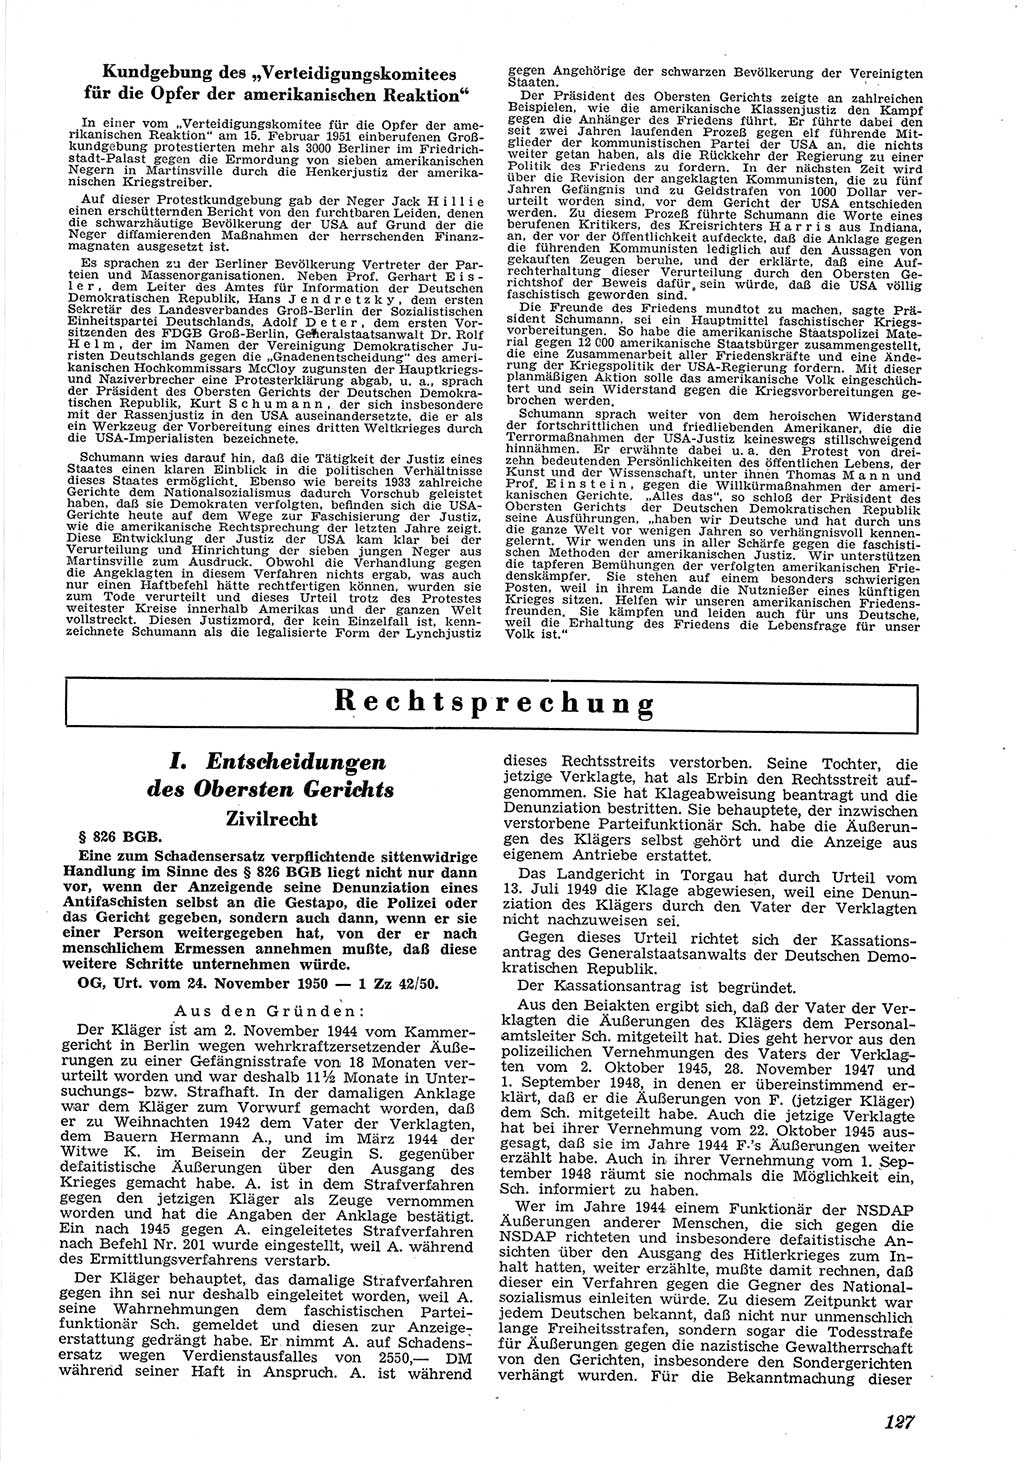 Neue Justiz (NJ), Zeitschrift für Recht und Rechtswissenschaft [Deutsche Demokratische Republik (DDR)], 5. Jahrgang 1951, Seite 127 (NJ DDR 1951, S. 127)